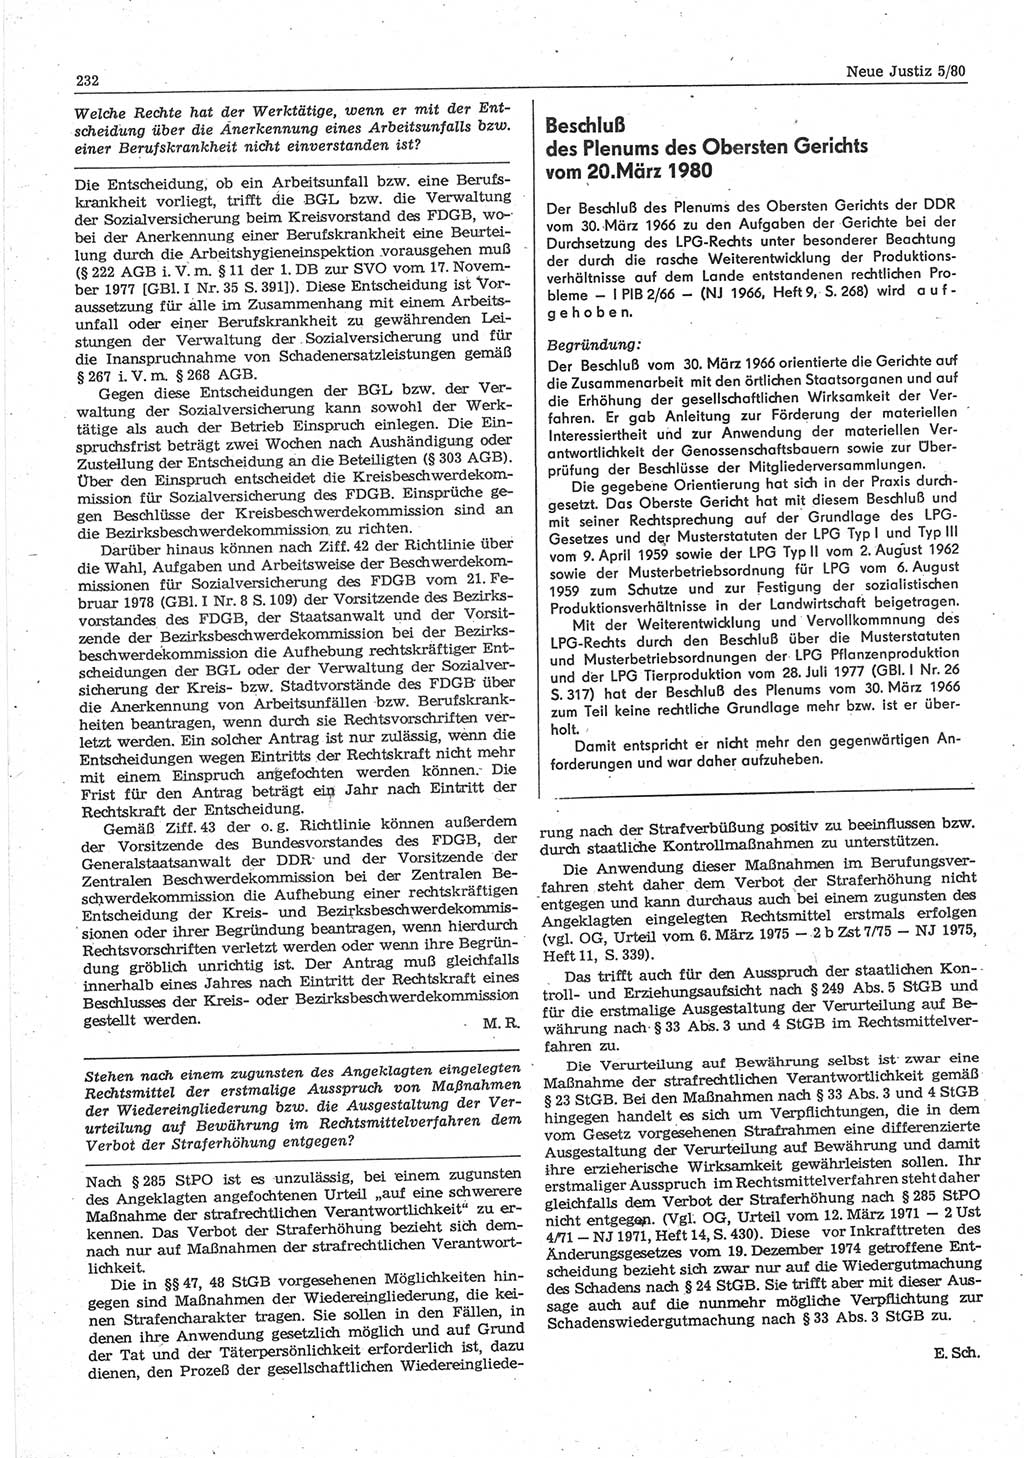 Neue Justiz (NJ), Zeitschrift für sozialistisches Recht und Gesetzlichkeit [Deutsche Demokratische Republik (DDR)], 34. Jahrgang 1980, Seite 232 (NJ DDR 1980, S. 232)